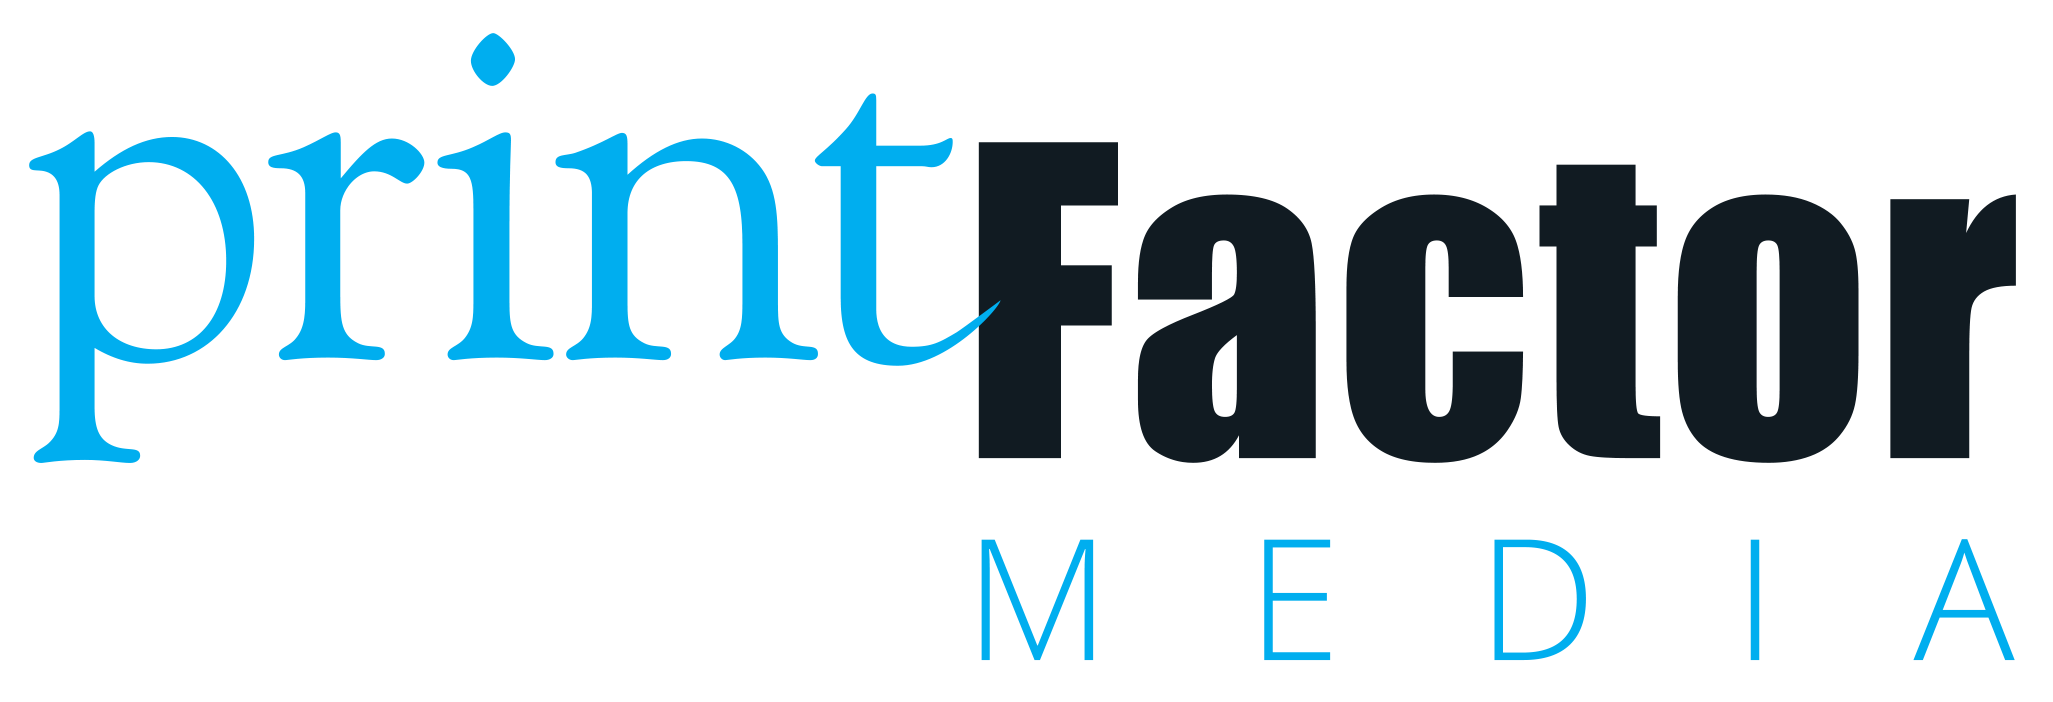 printFactor Media Group Inc.